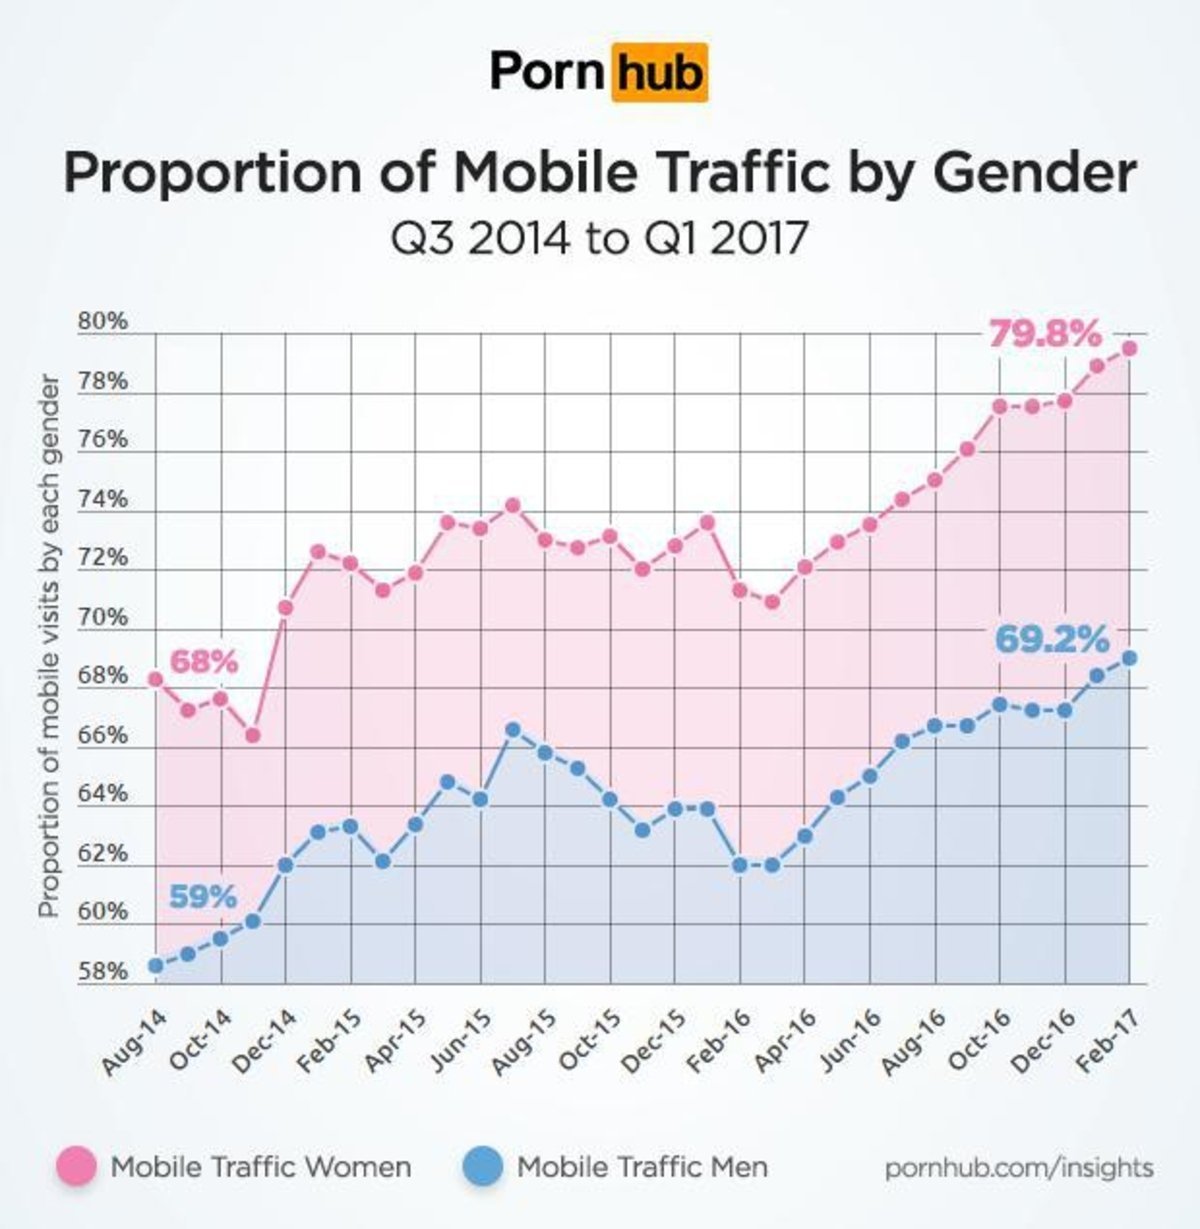 Las mujeres ven más contenido para adultos que los hombres